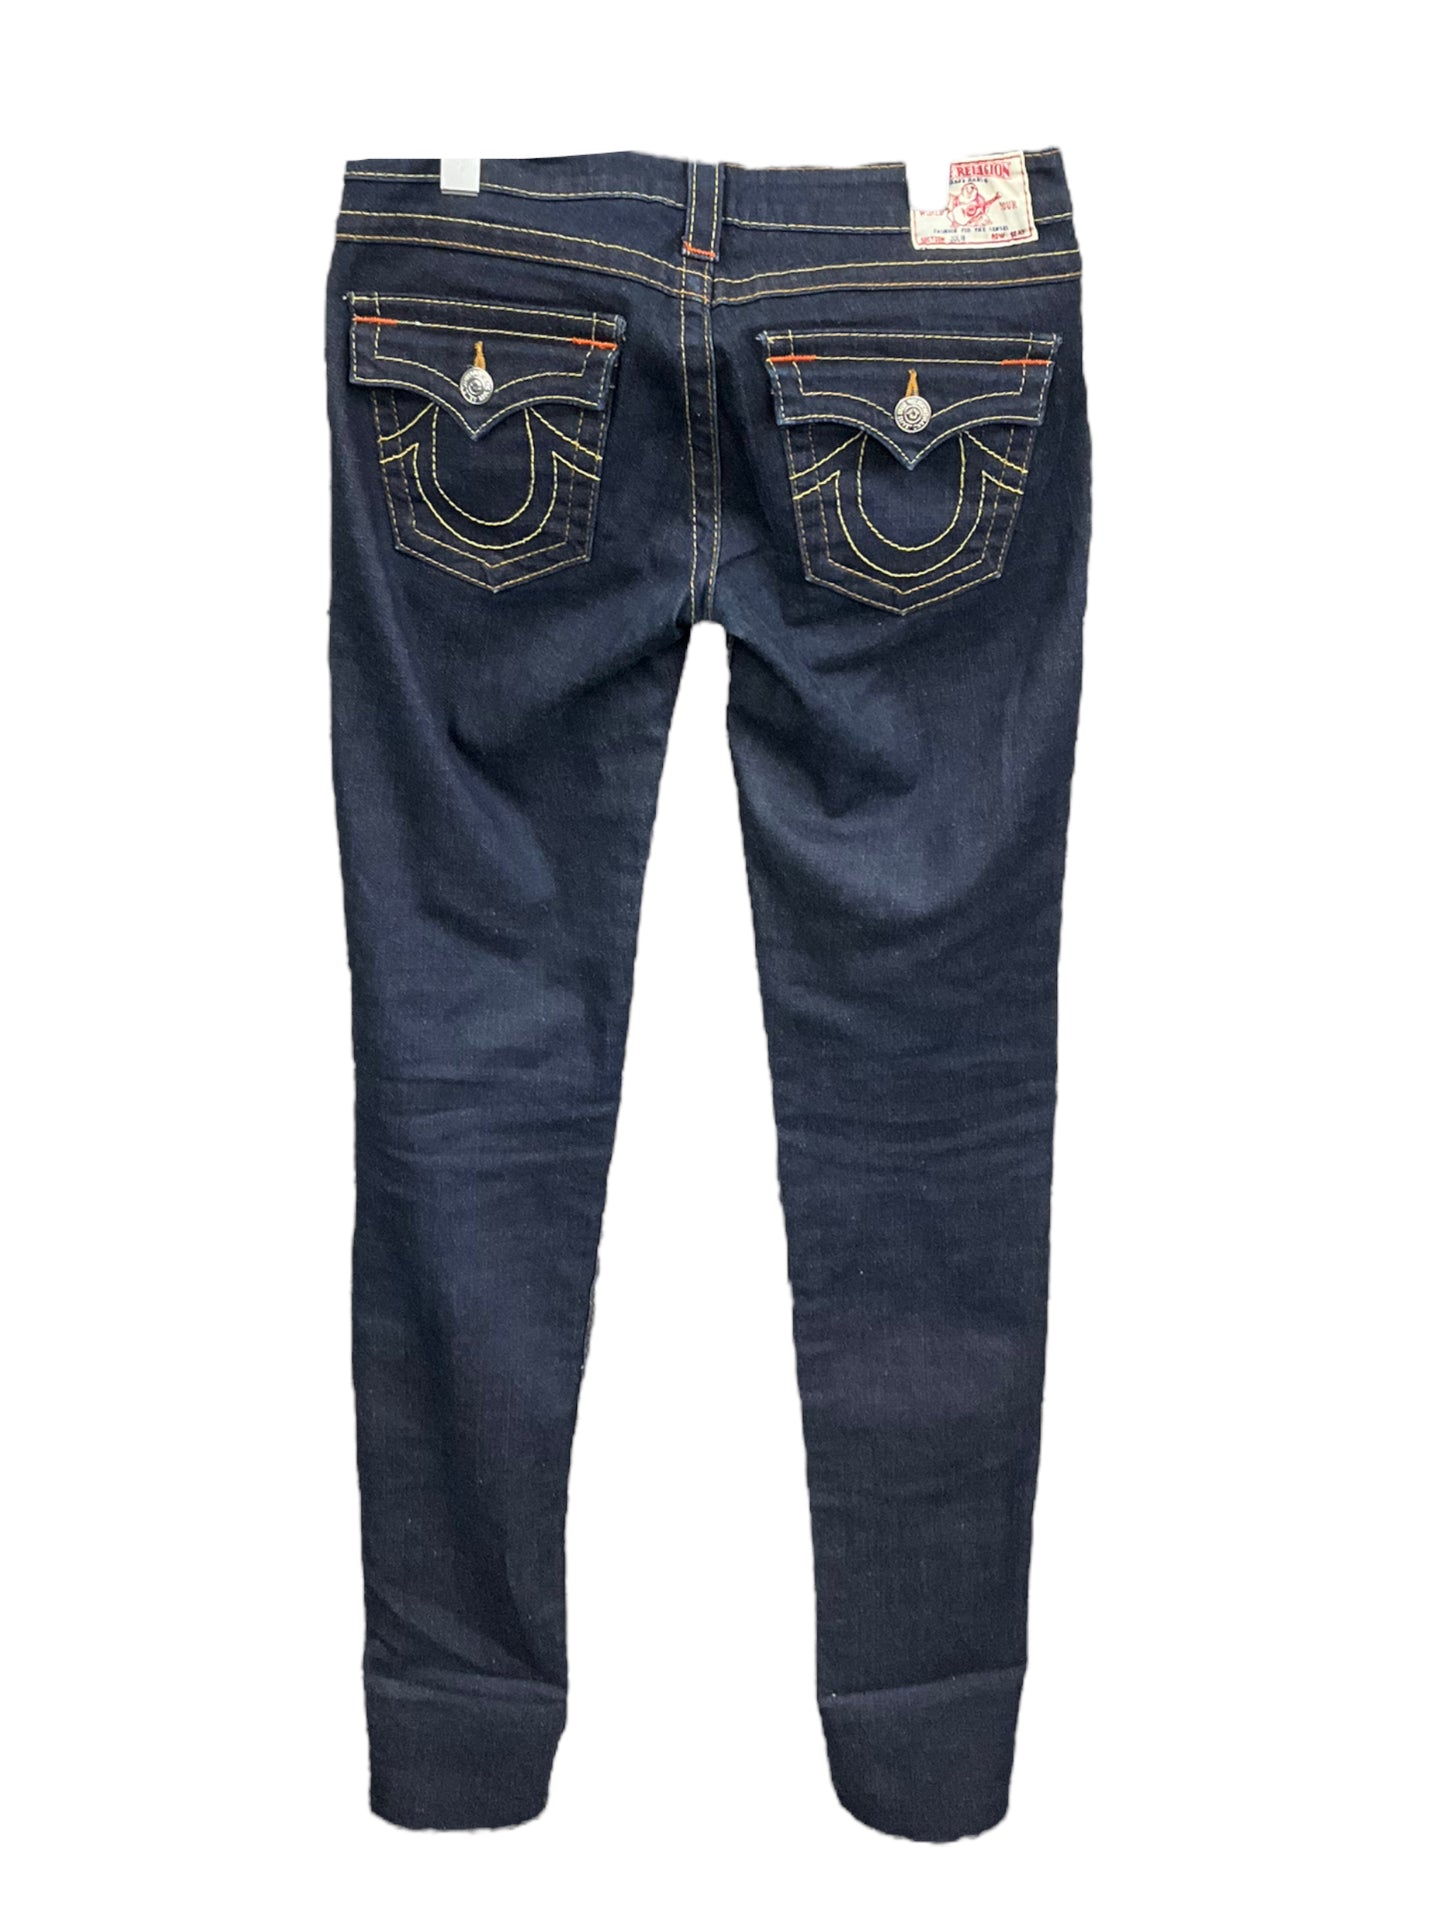 Jeans Skinny By True Religion  Size: 28